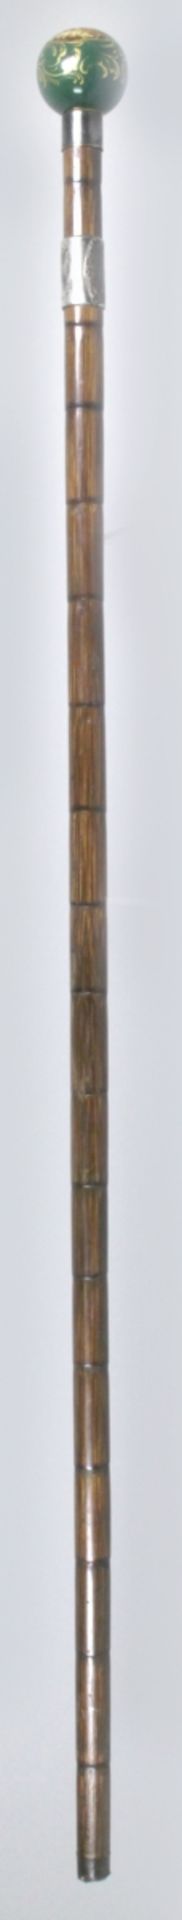 Spazierstock, um 1900, Schaft aus Bambus, Porzellan-Kugelgriff, fein polychrom bemalt,Manschette - Bild 2 aus 4